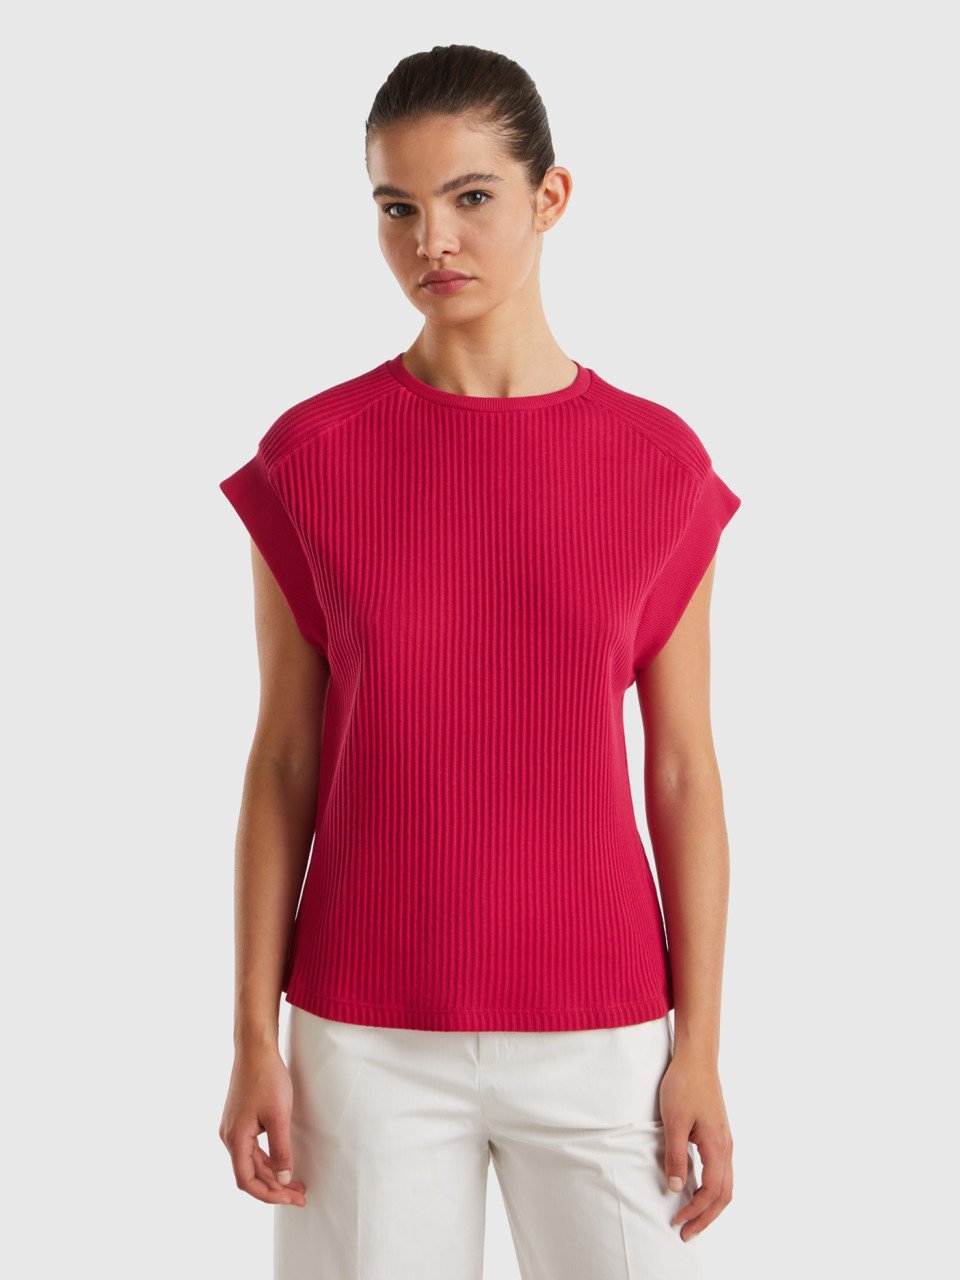 Benetton, Comfort Fit T-shirt, Cyclamen, Women